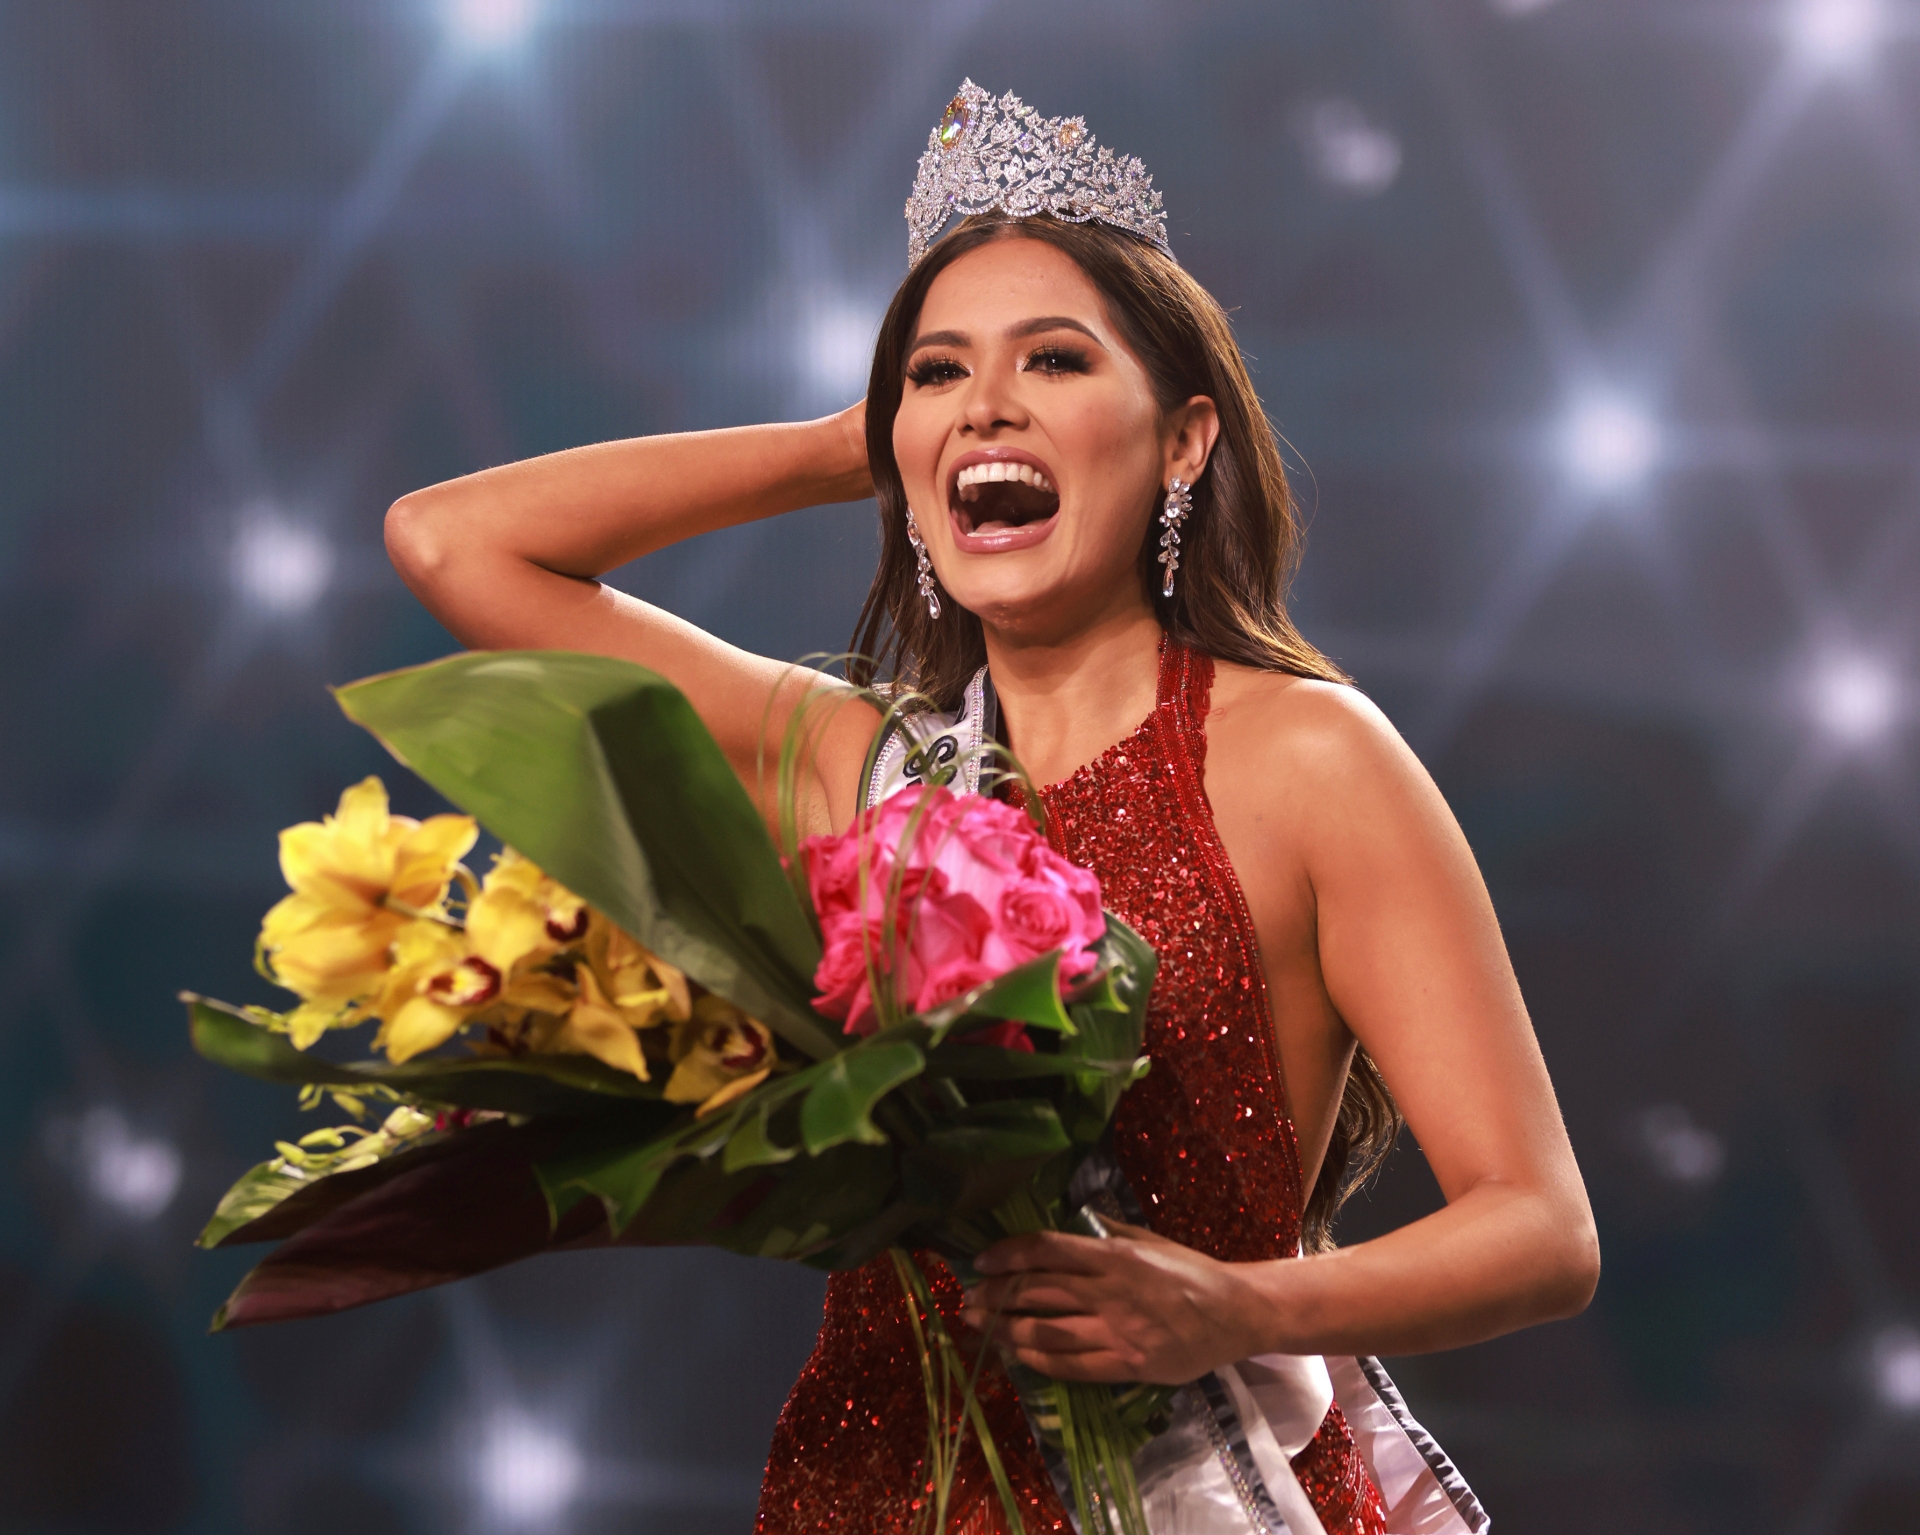 Andrea Meza đang nắm giữ thời gian đương nhiệm ngắn kỷ lục trong lịch sử của Miss Universe